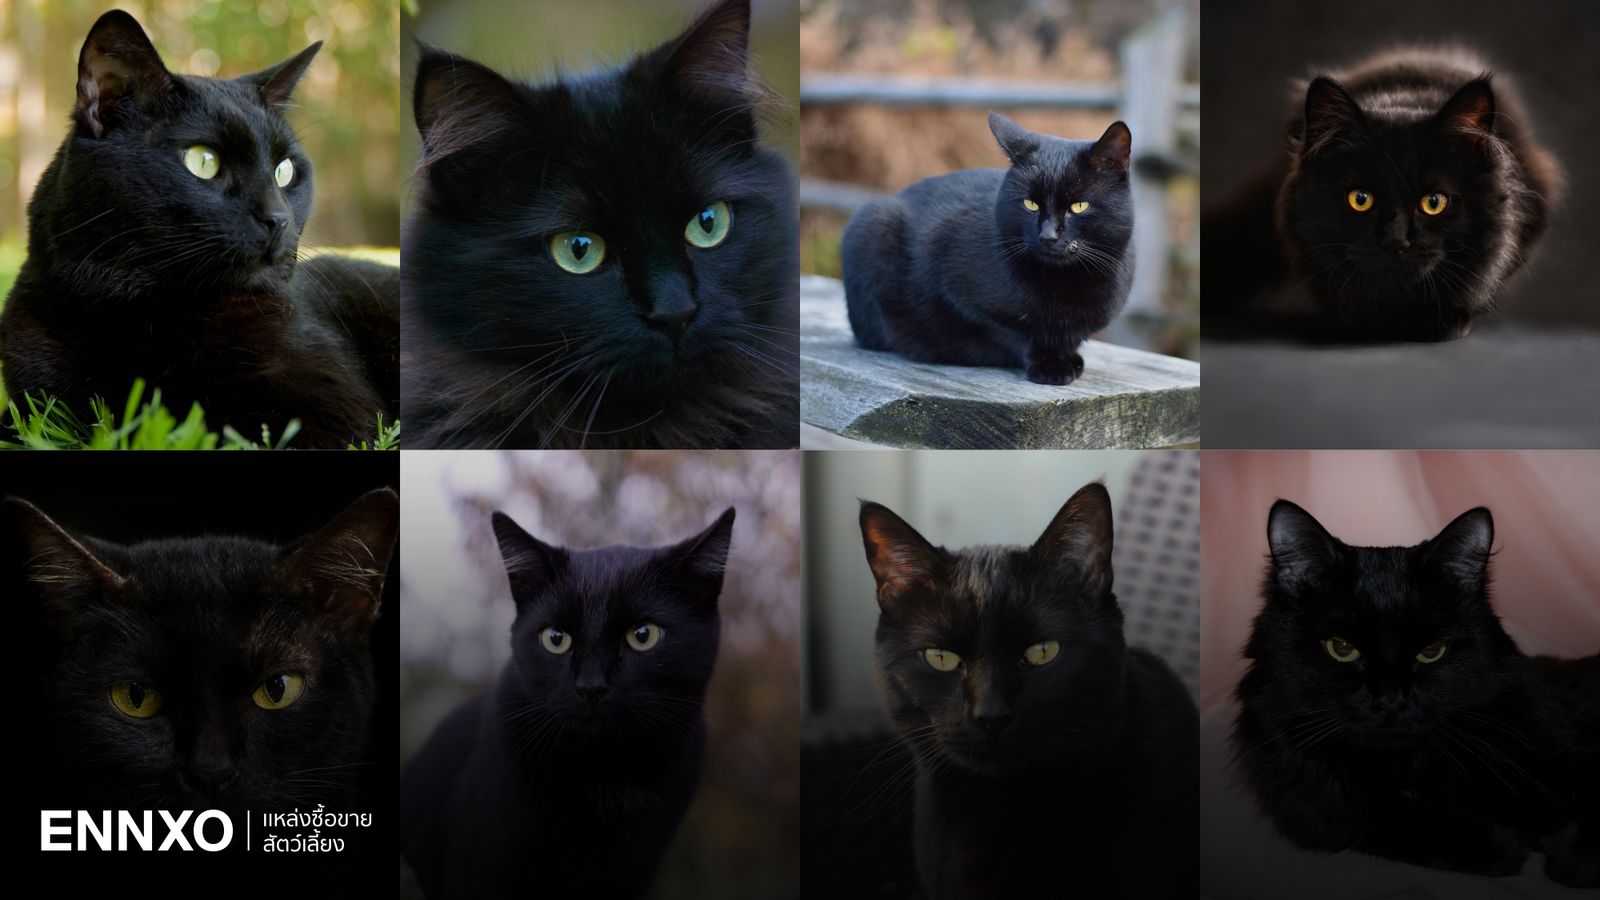 แมวดำมีสายพันธุ์อะไรบ้าง พร้อมเผยนิสัยที่ตกเหล่าทาสแมว